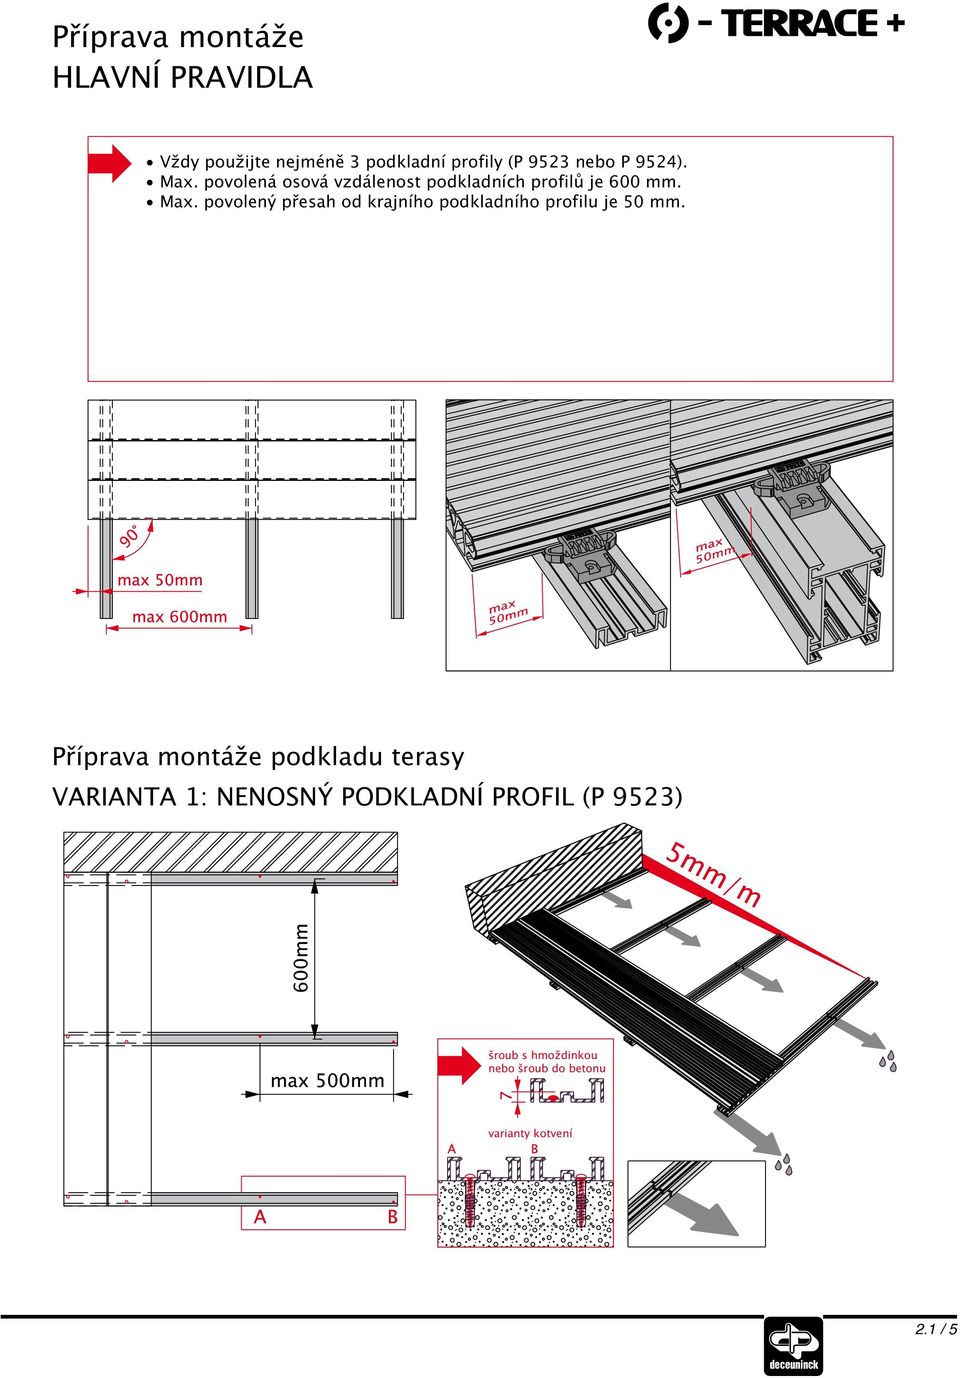 Příprava montáže podkladu terasy VARIANTA 1: NENOSNÝ PODKLADNÍ PROFIL (P 9523) šroub s